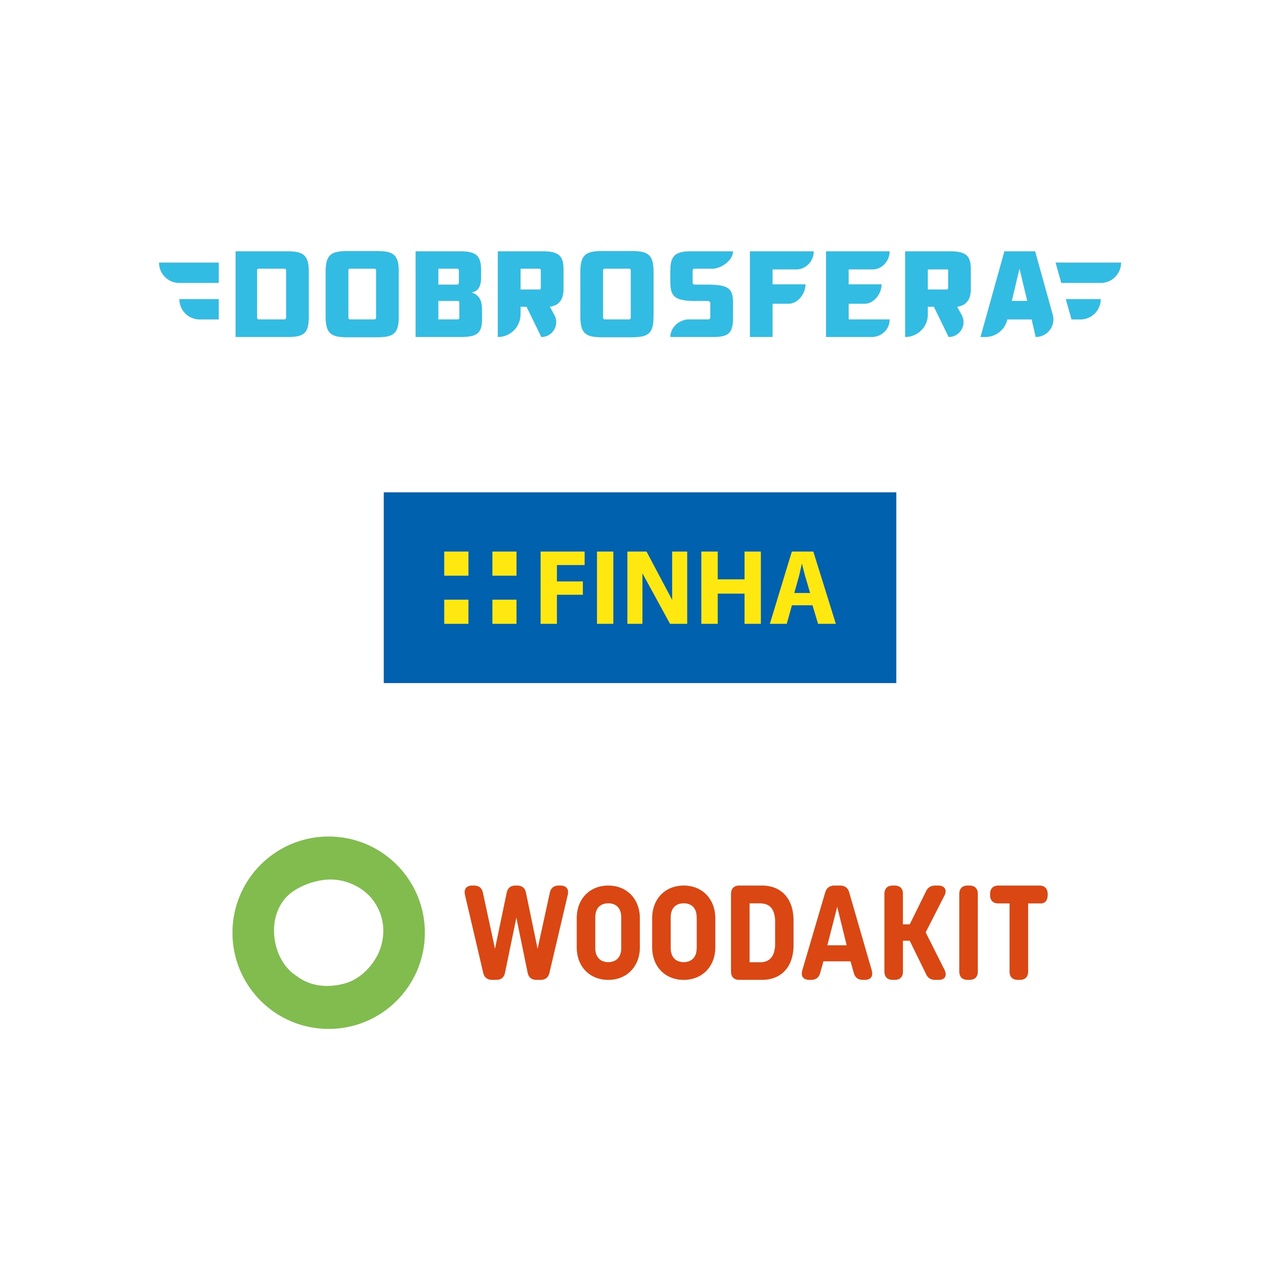 С 1 января 2022 г. бренды DOBROSFERA, FINHA и WOODAKIT